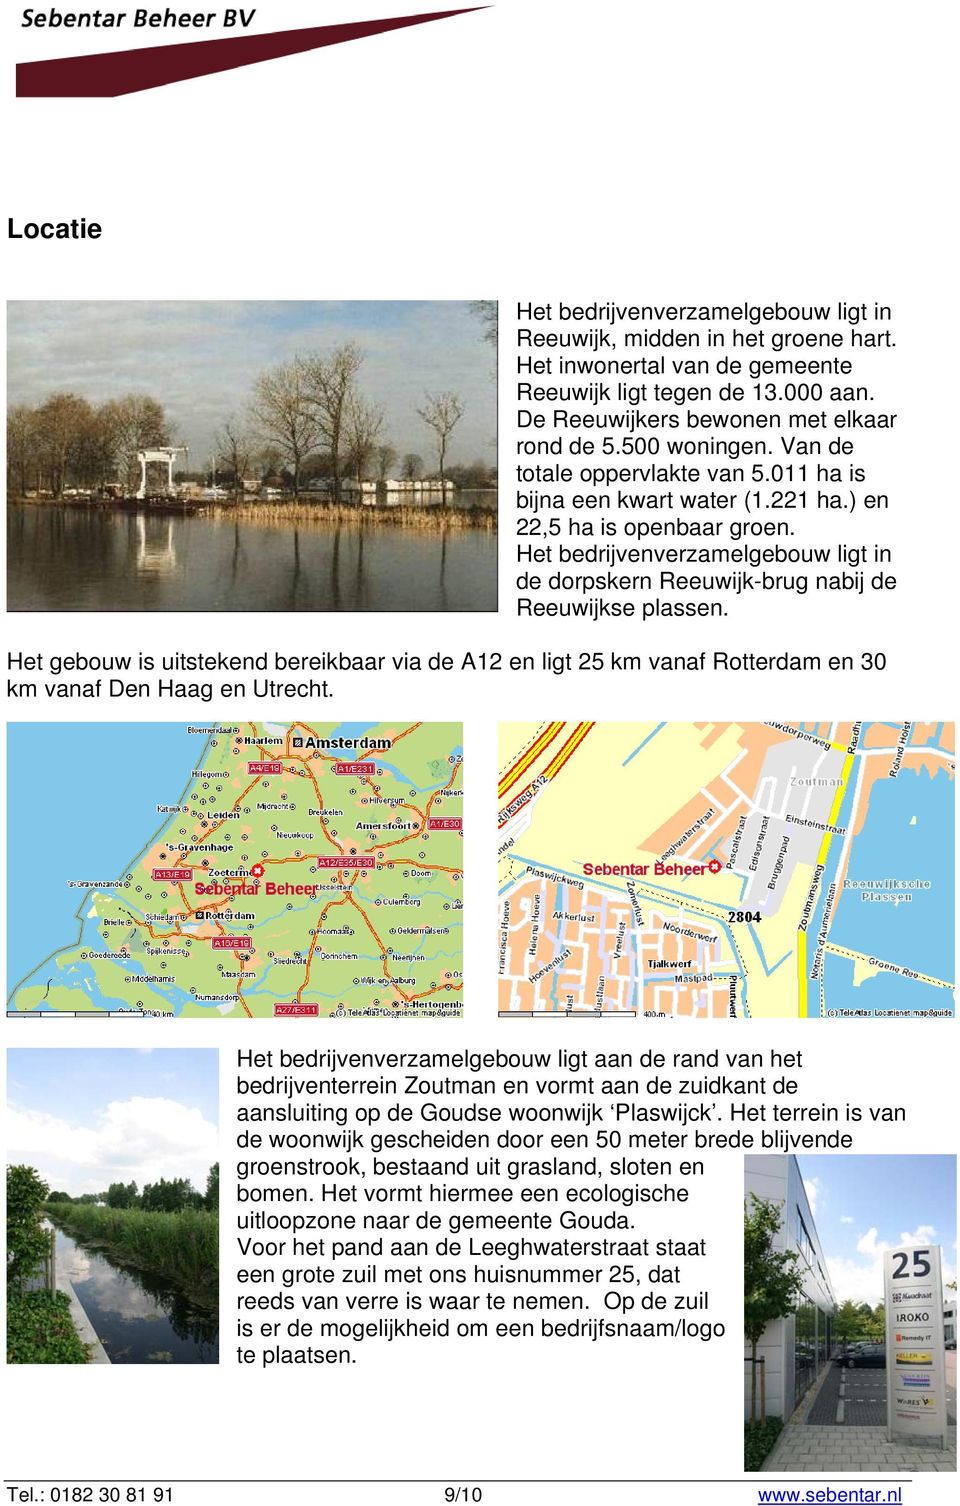 Het bedrijvenverzamelgebouw ligt in de dorpskern Reeuwijk-brug nabij de Reeuwijkse plassen.